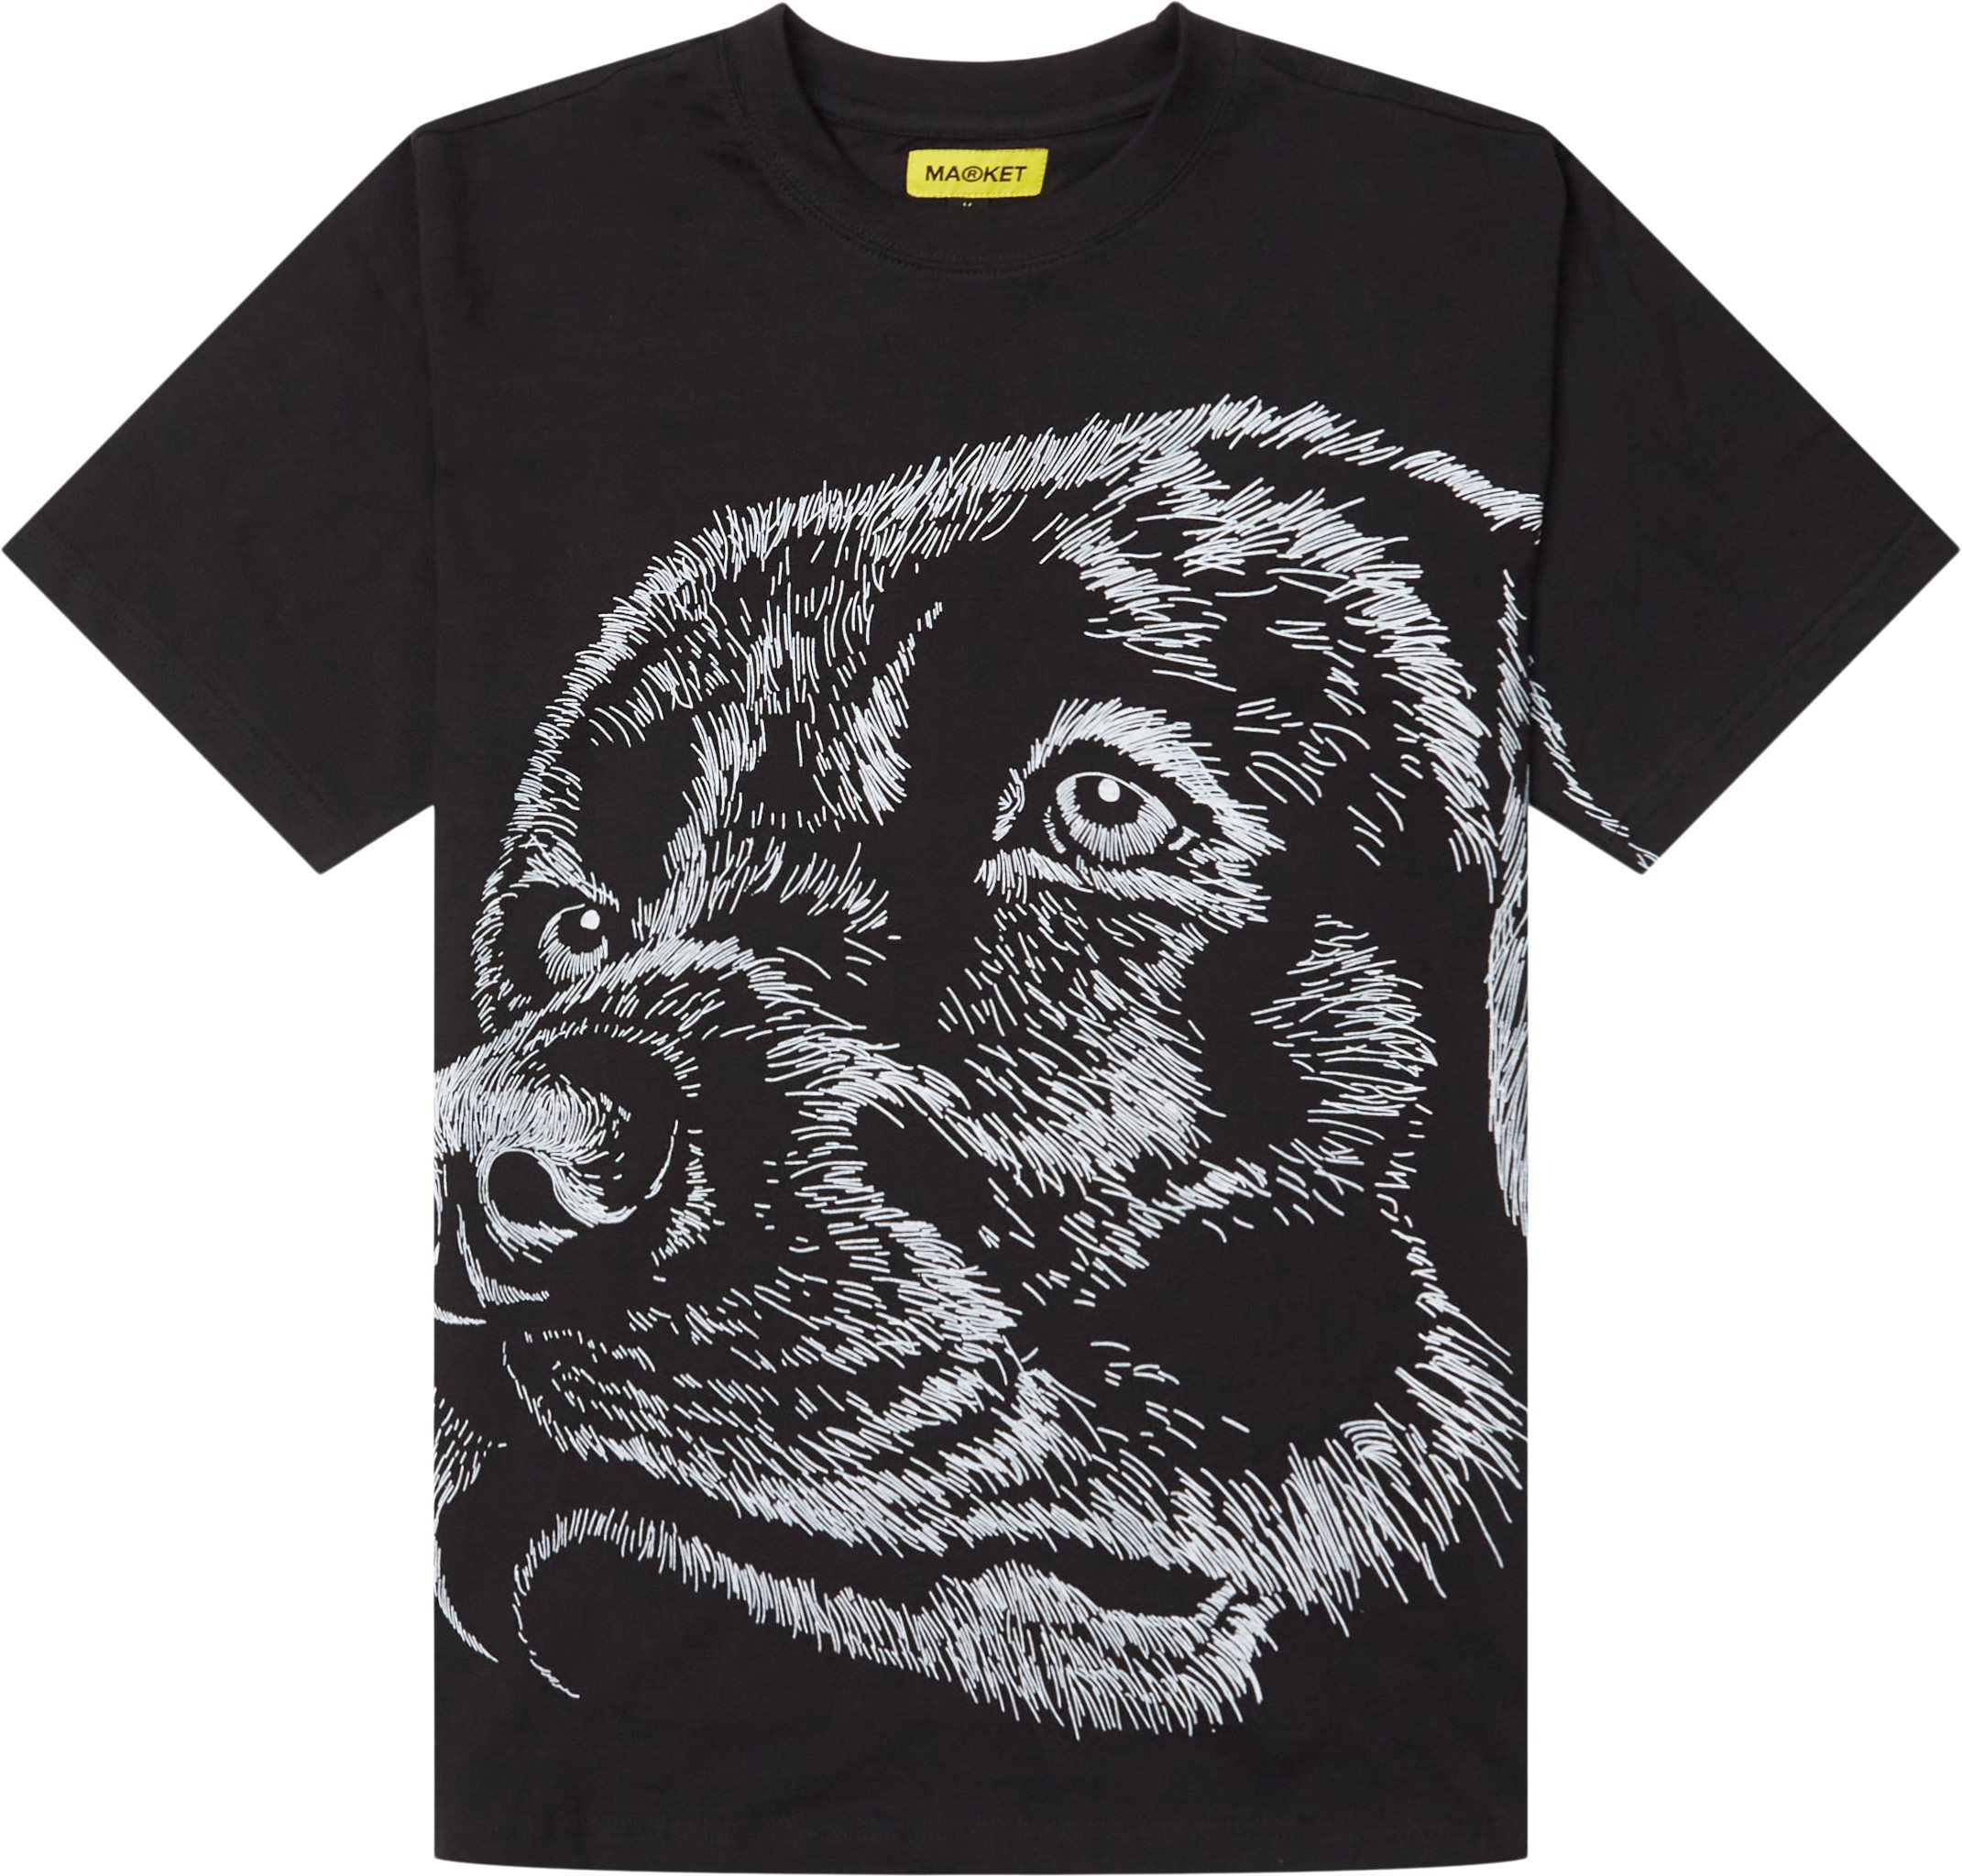 Guard Dog Maximum Security Tee - T-shirts - Regular fit - Black